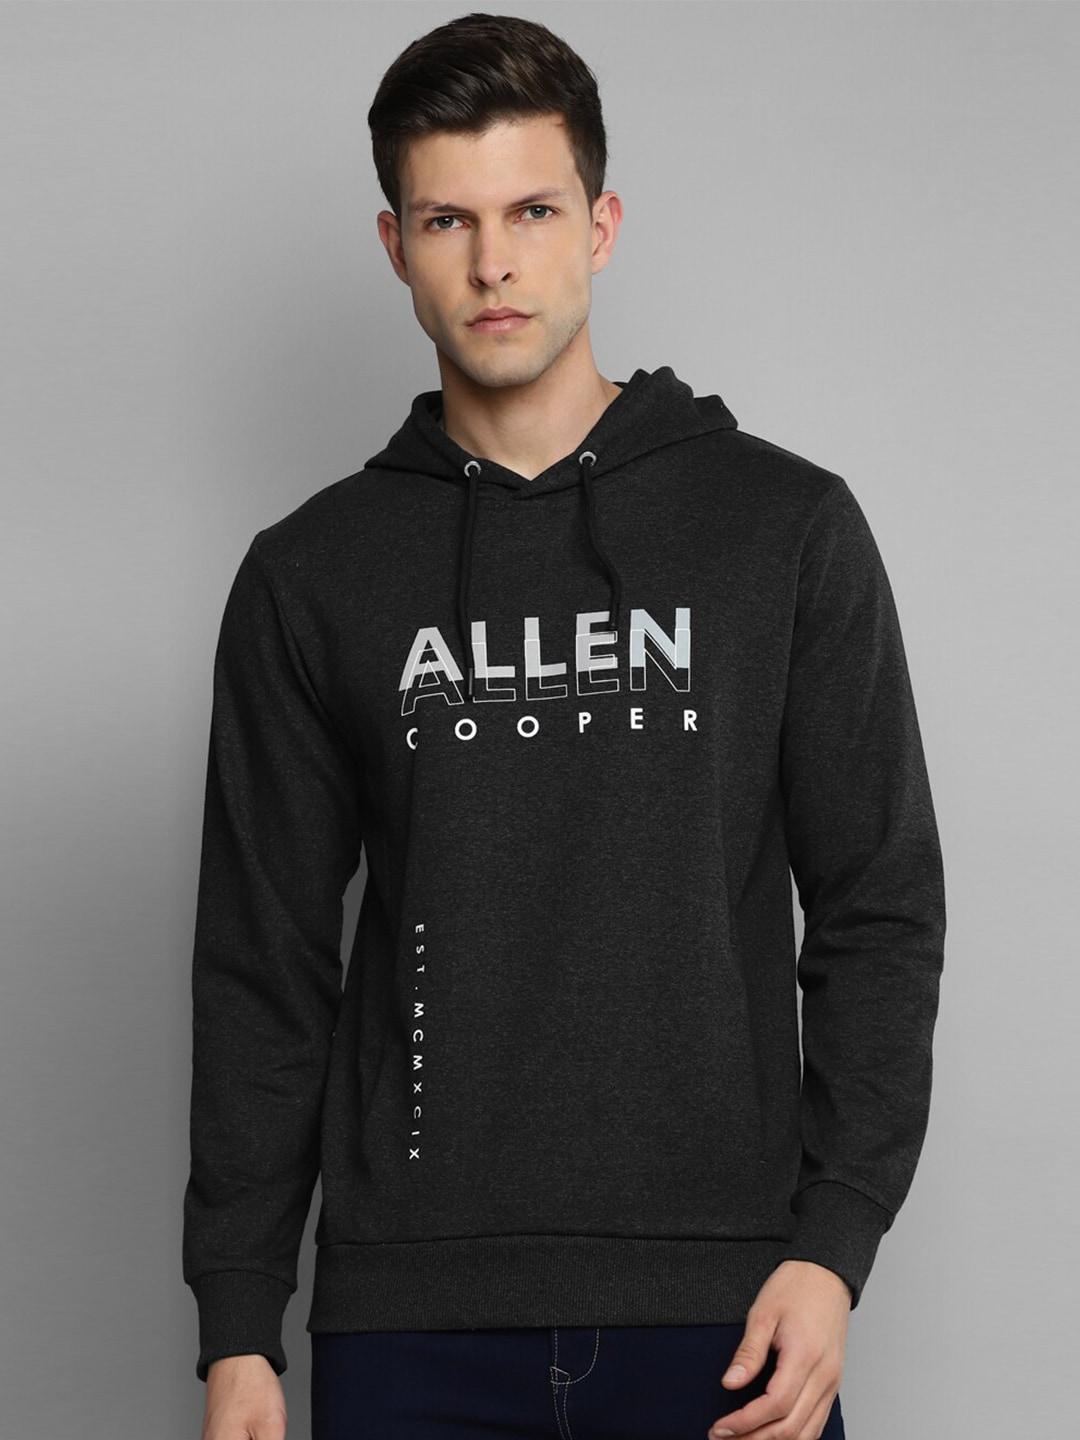 allen-cooper-men-black-printed-hooded-sweatshirt